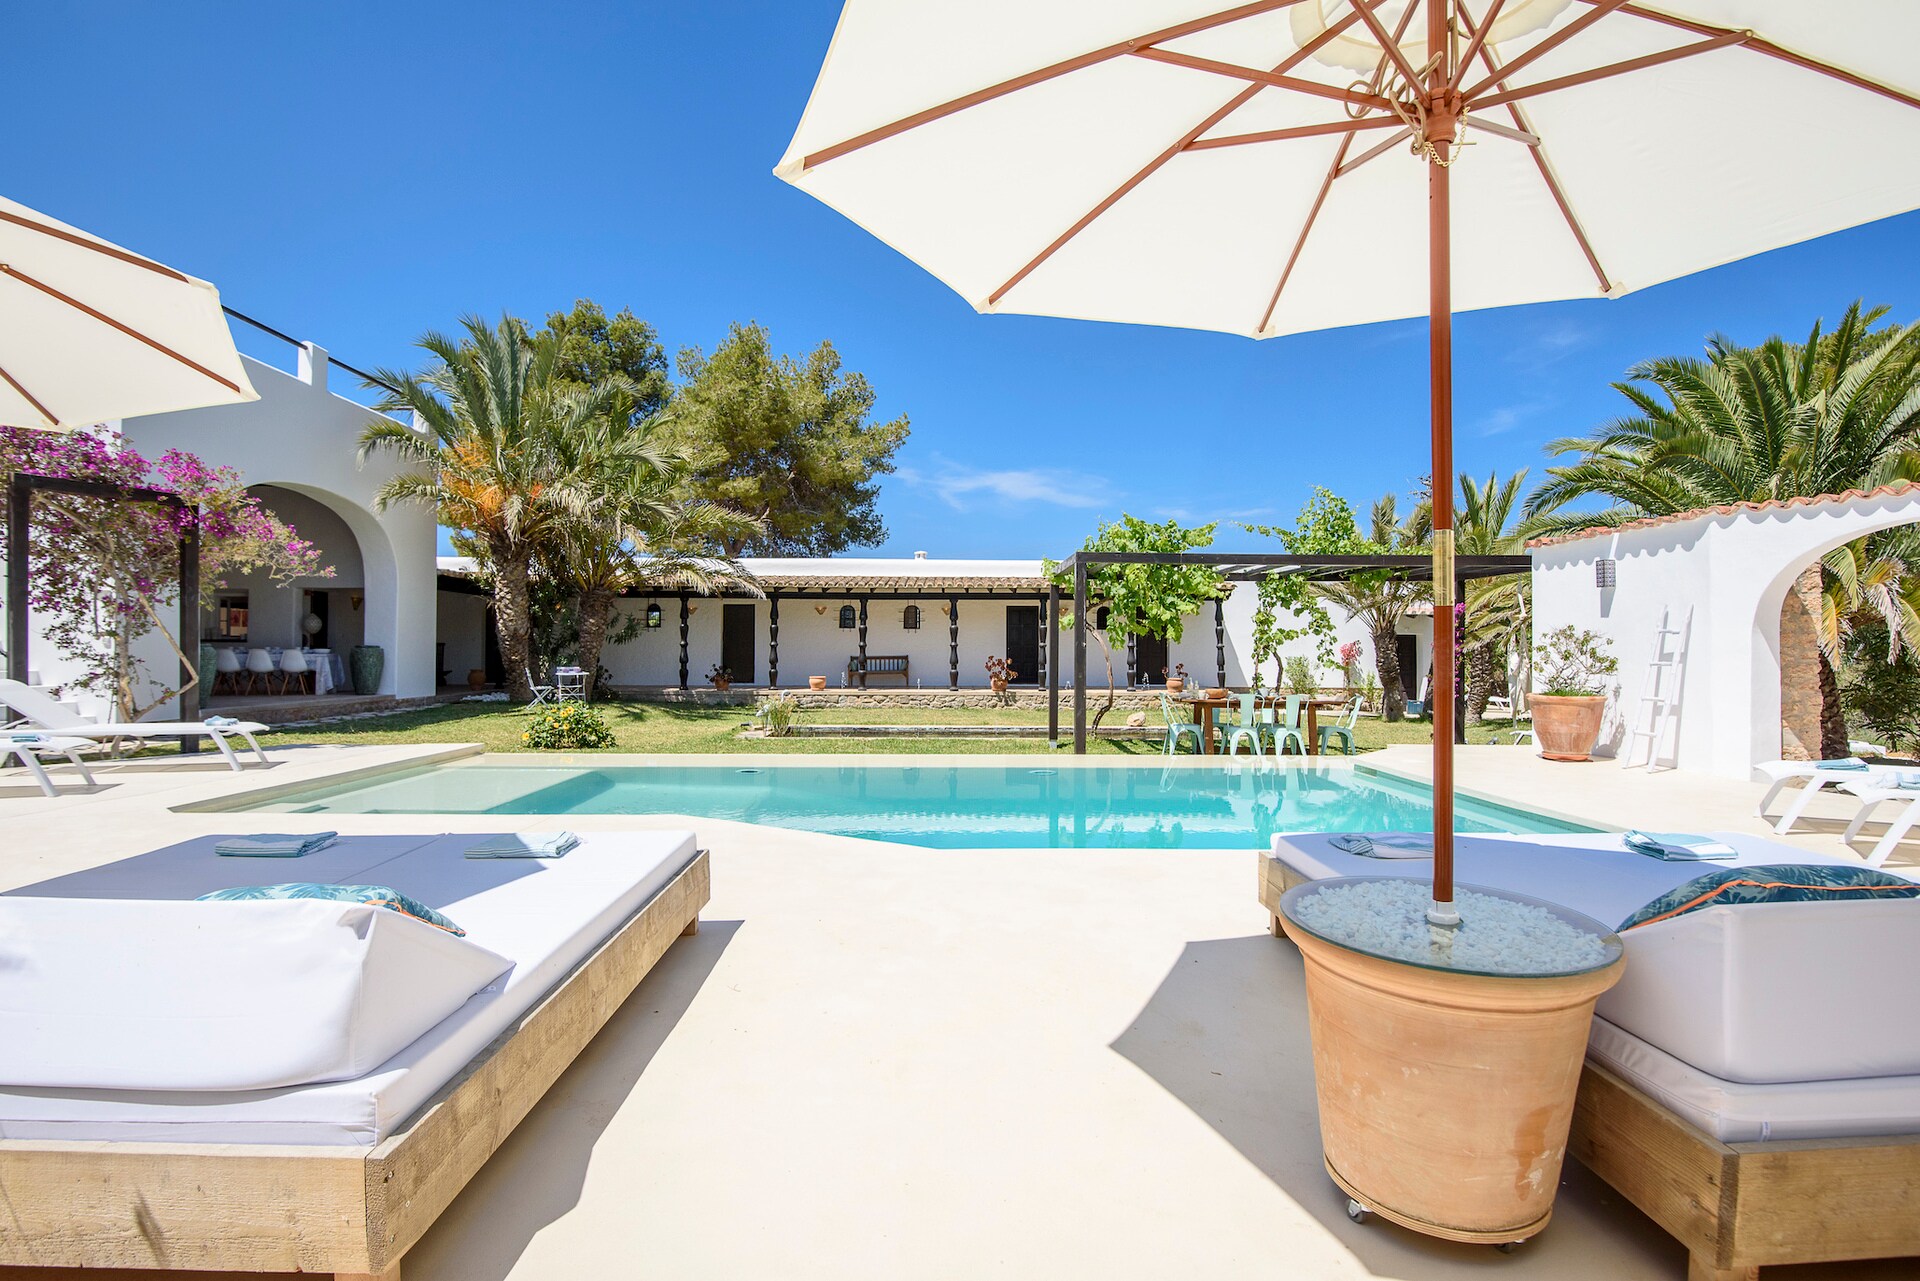 Property Image 2 - Property Manager Private Villa close to the Beach, Ibiza Villa 1050